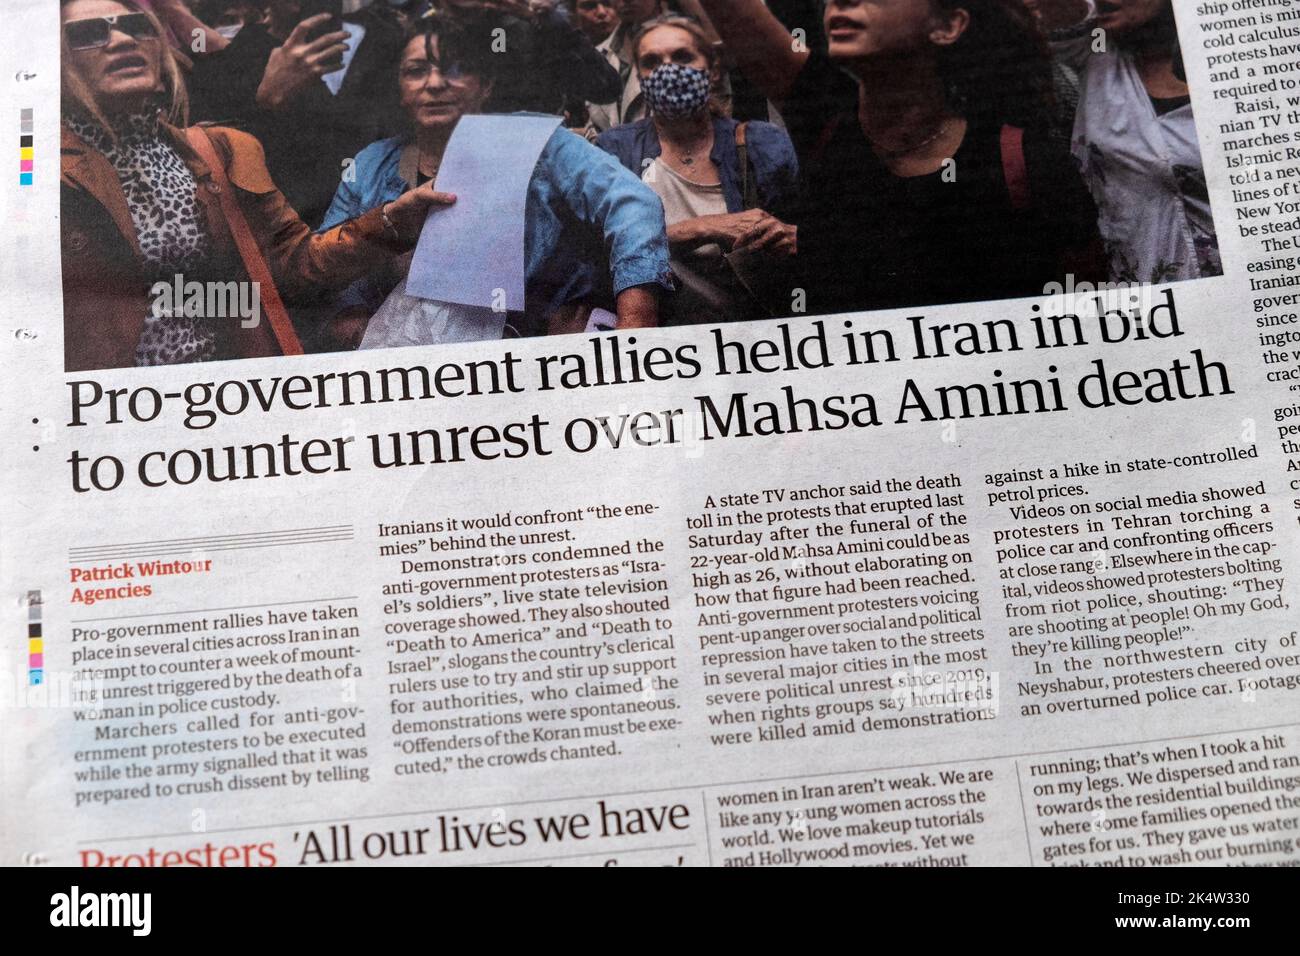 "I rally pro-governo si sono tenuti in Iran per contrastare le tensioni sulla morte di Mahsa Amini" articolo del quotidiano Guardian clipping 24 settembre 2022 Londra UK Foto Stock